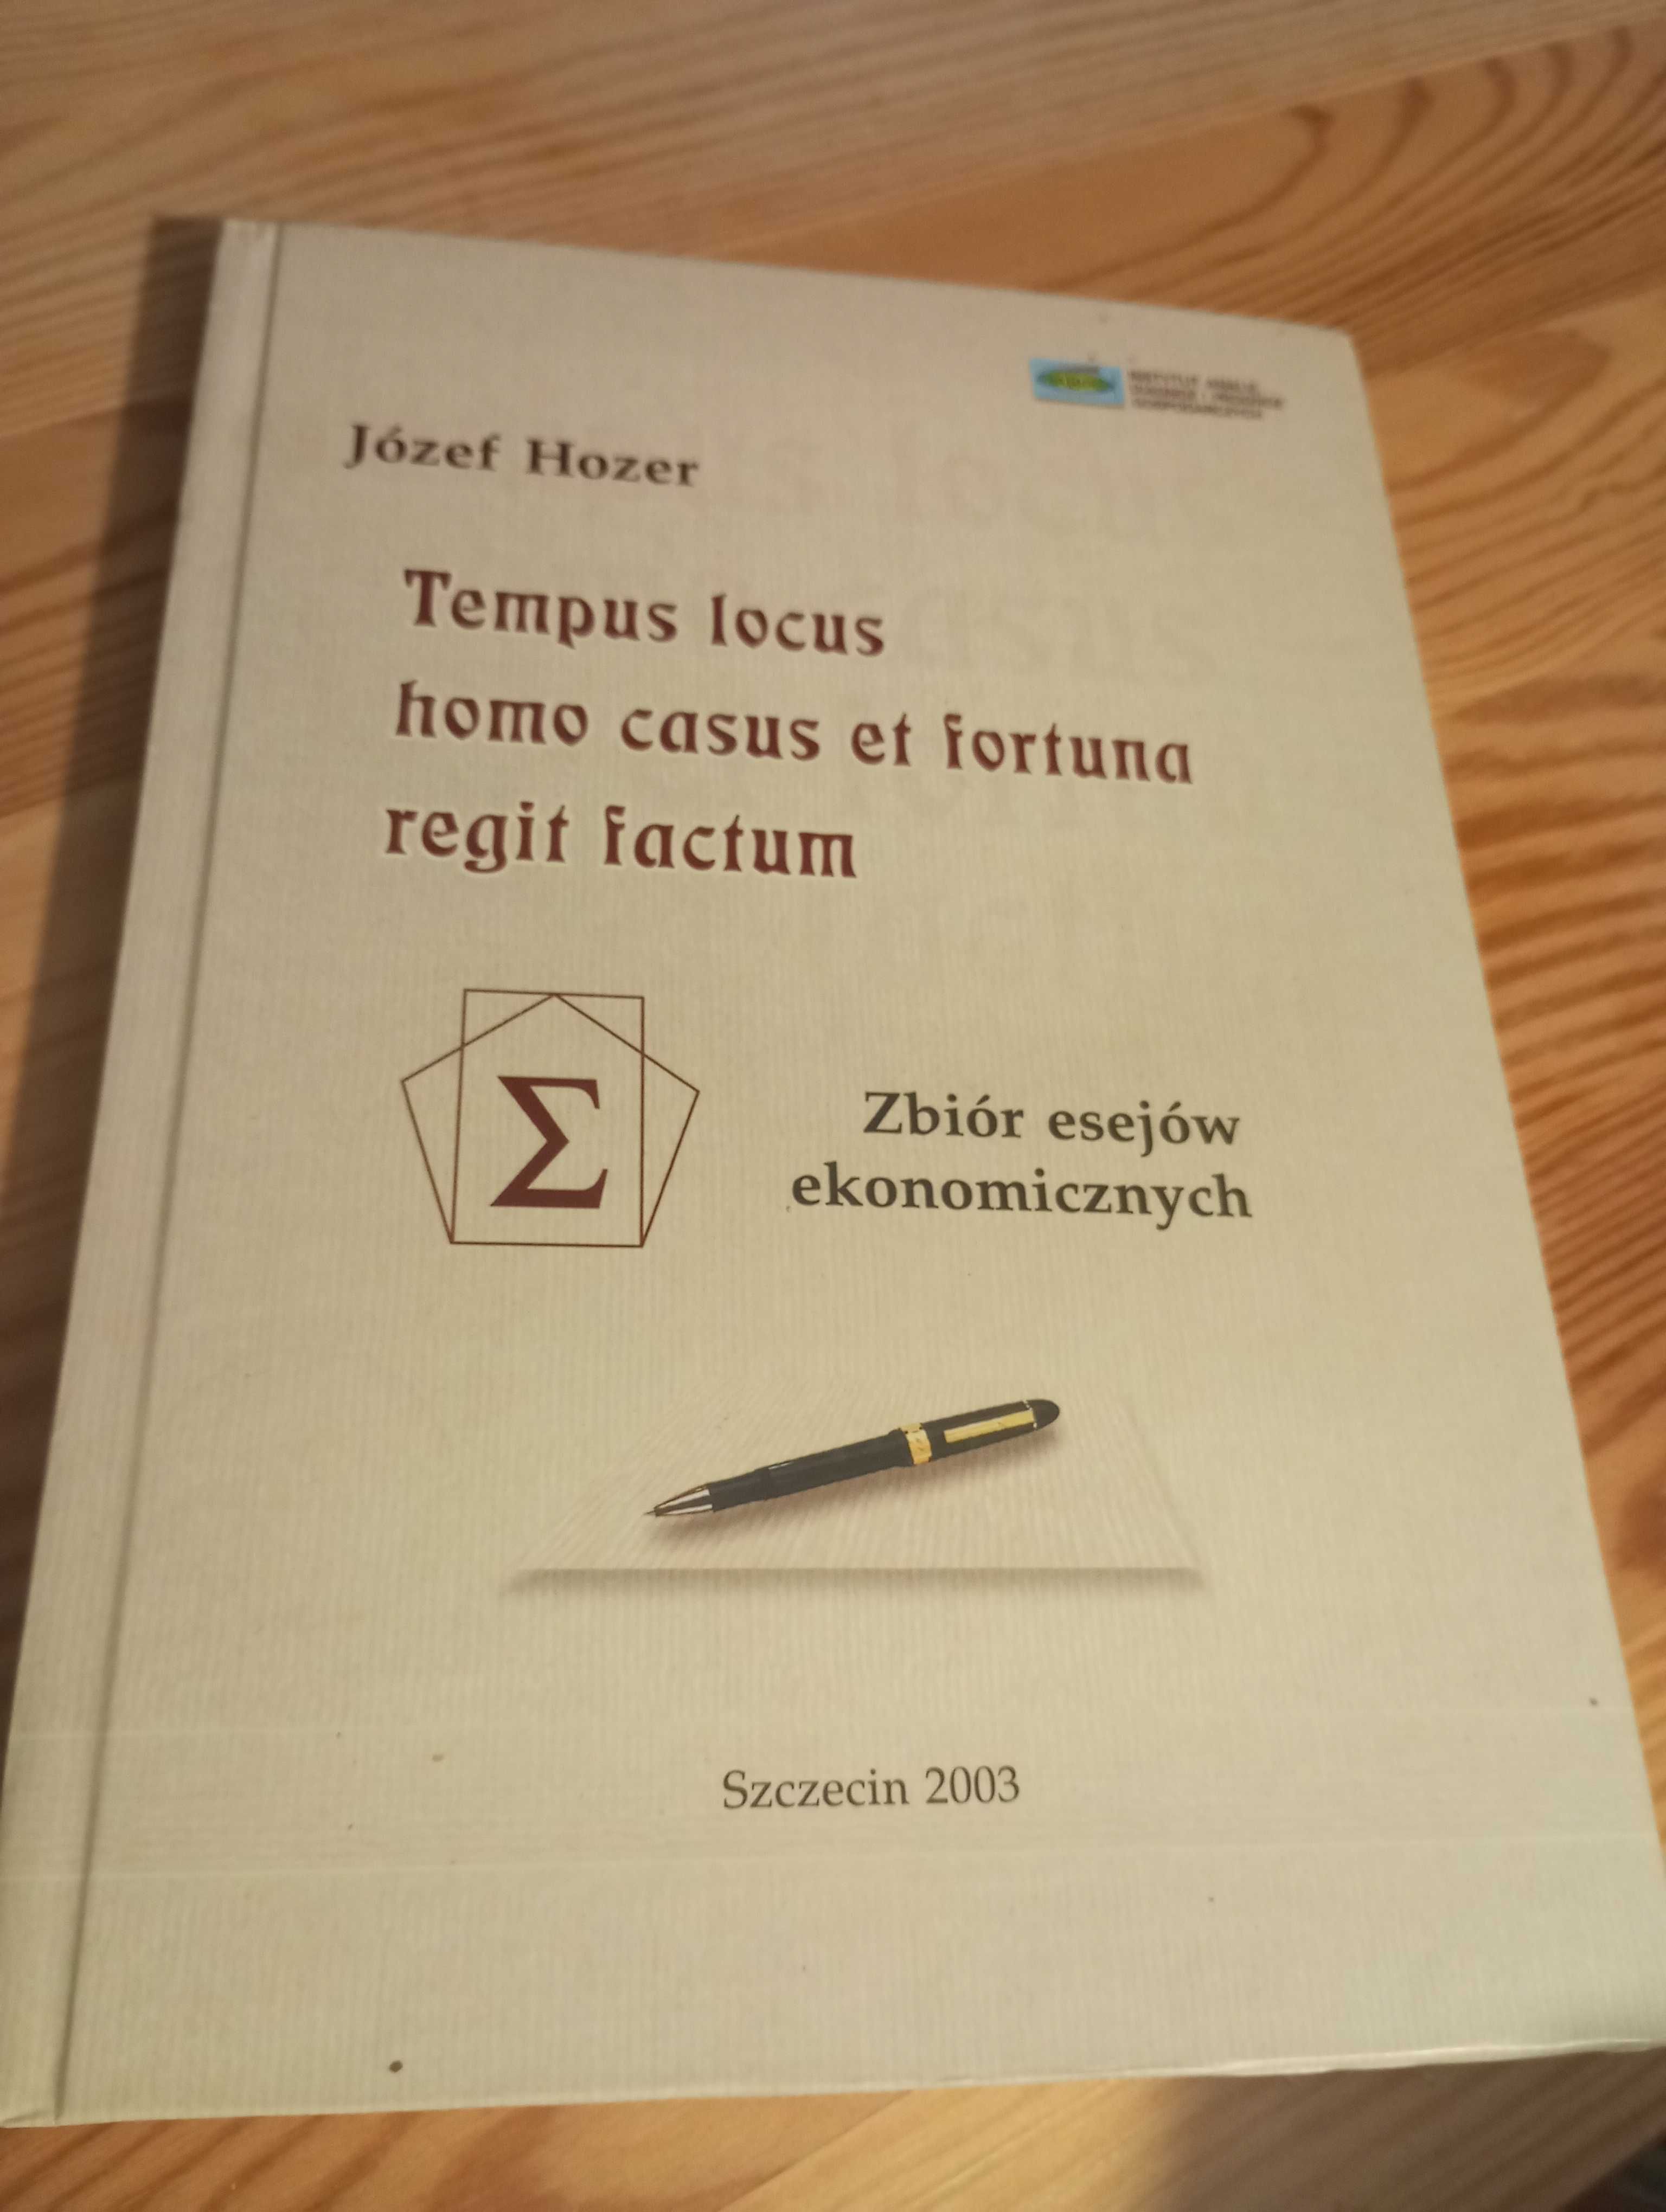 Tempus locus homo casus et fortuna ... J.Hozer